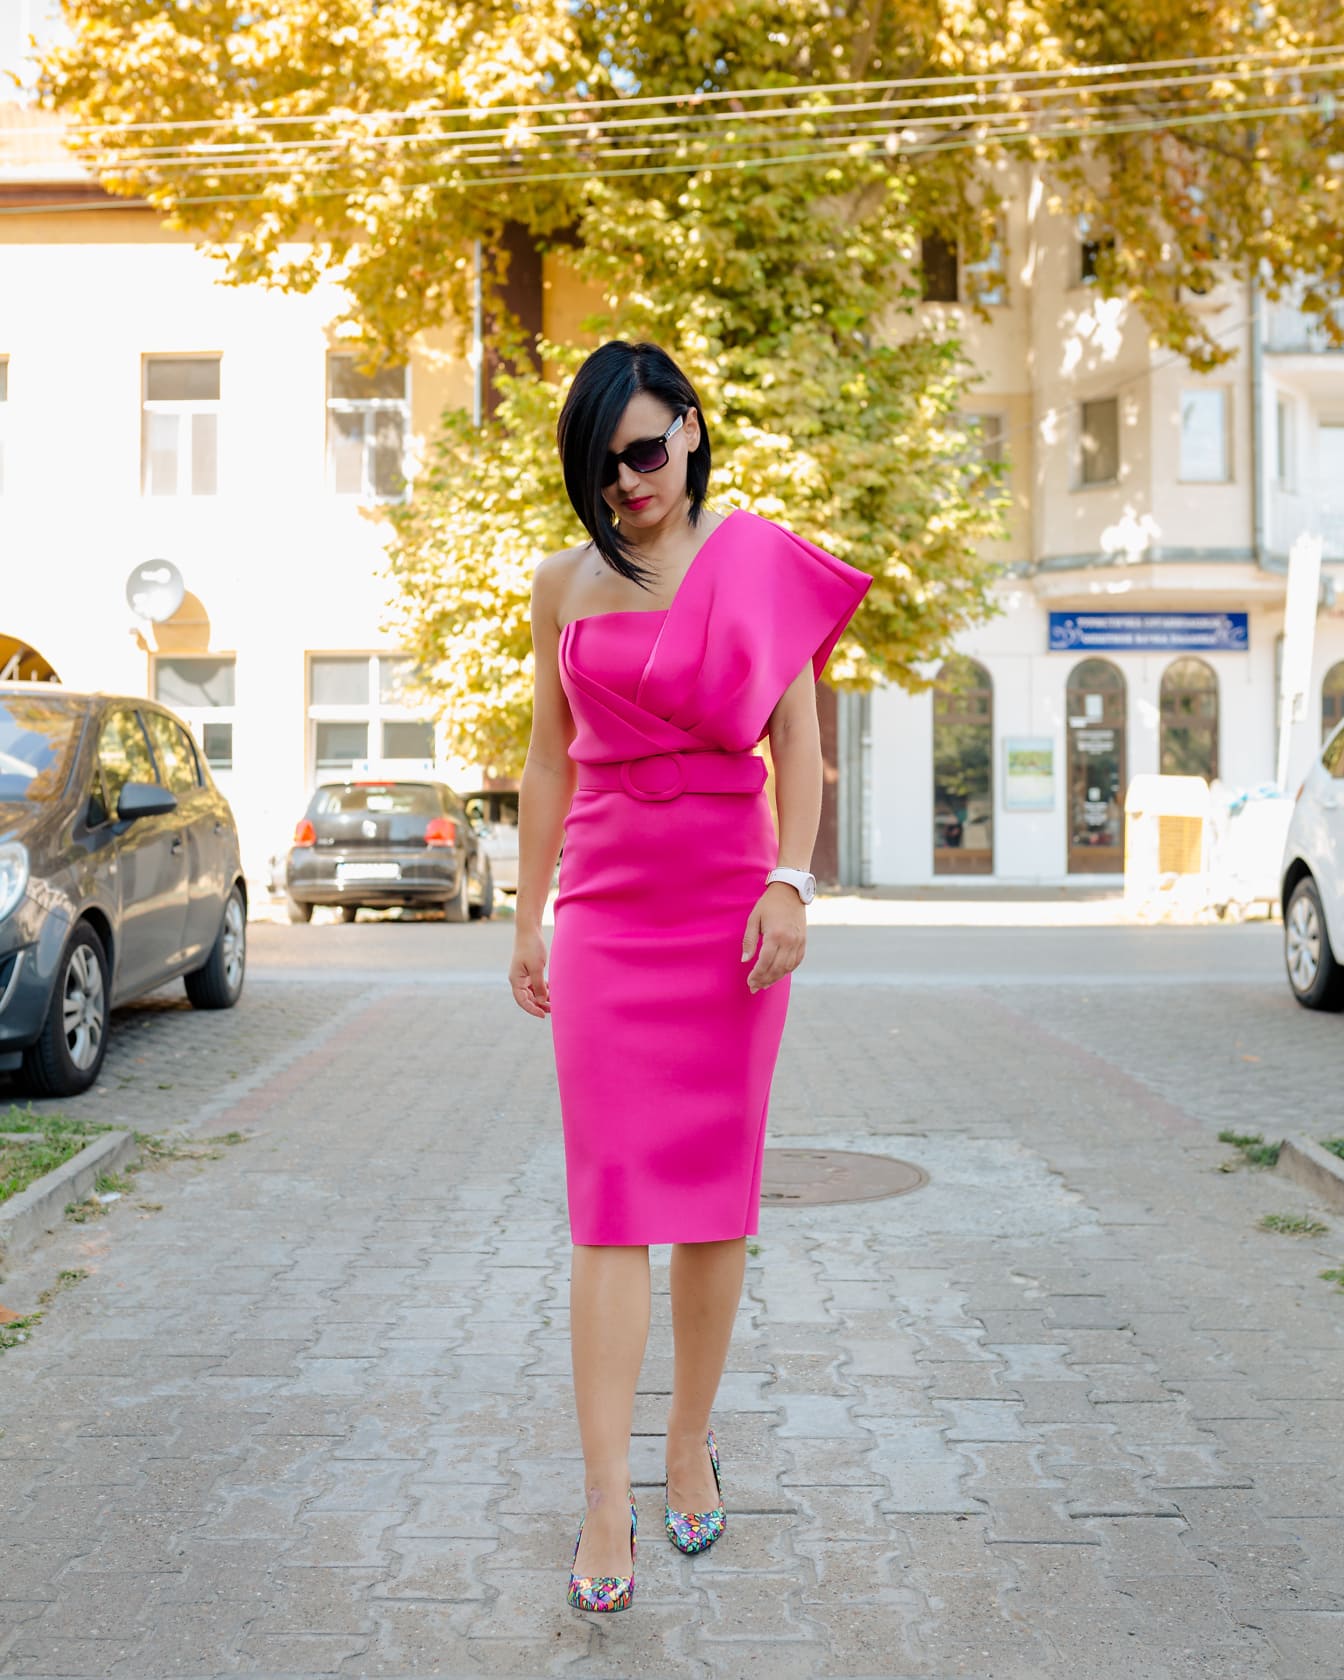 Mujer elegante en un vestido rosa de moda caminando por una calle